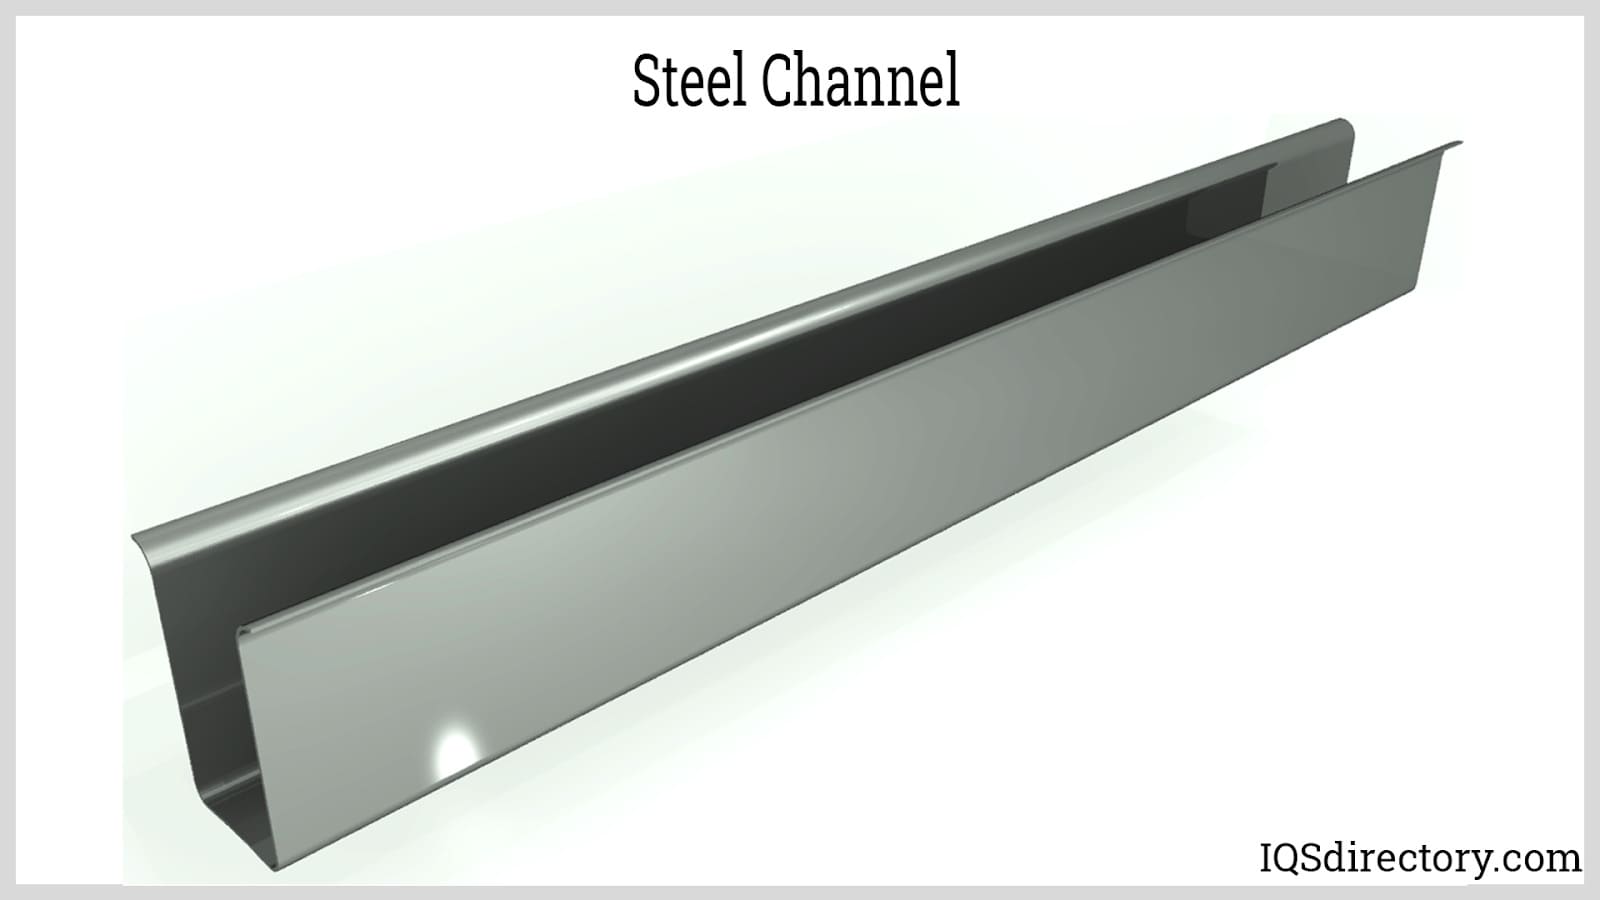 Steel Channel